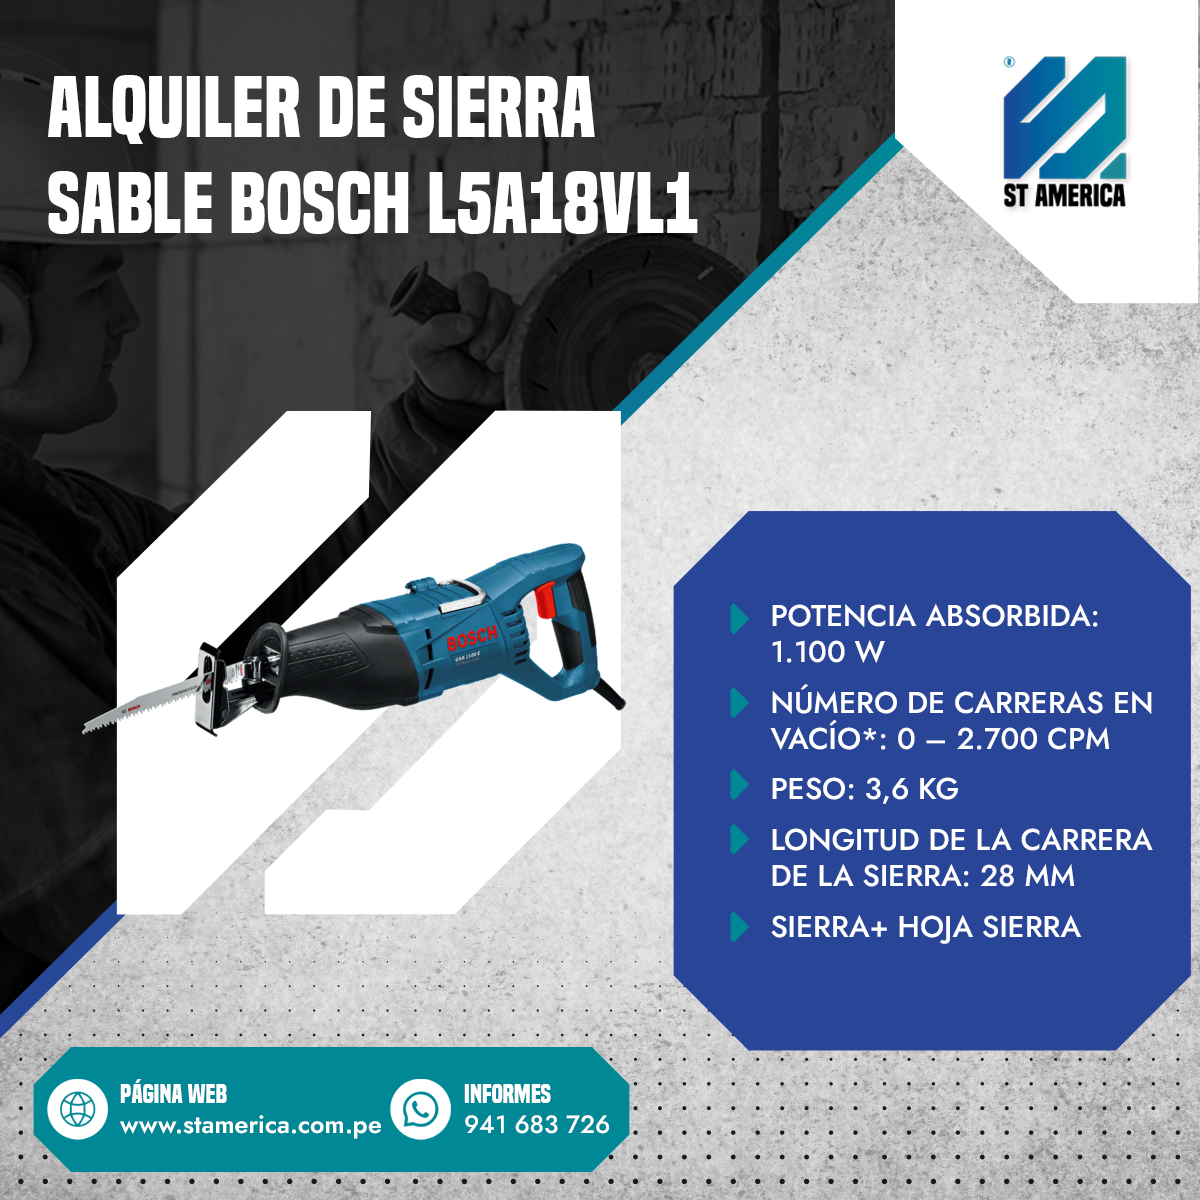 ALQUILER DE SIERRA SABLE BOSCH L5A18VL1 - Comers